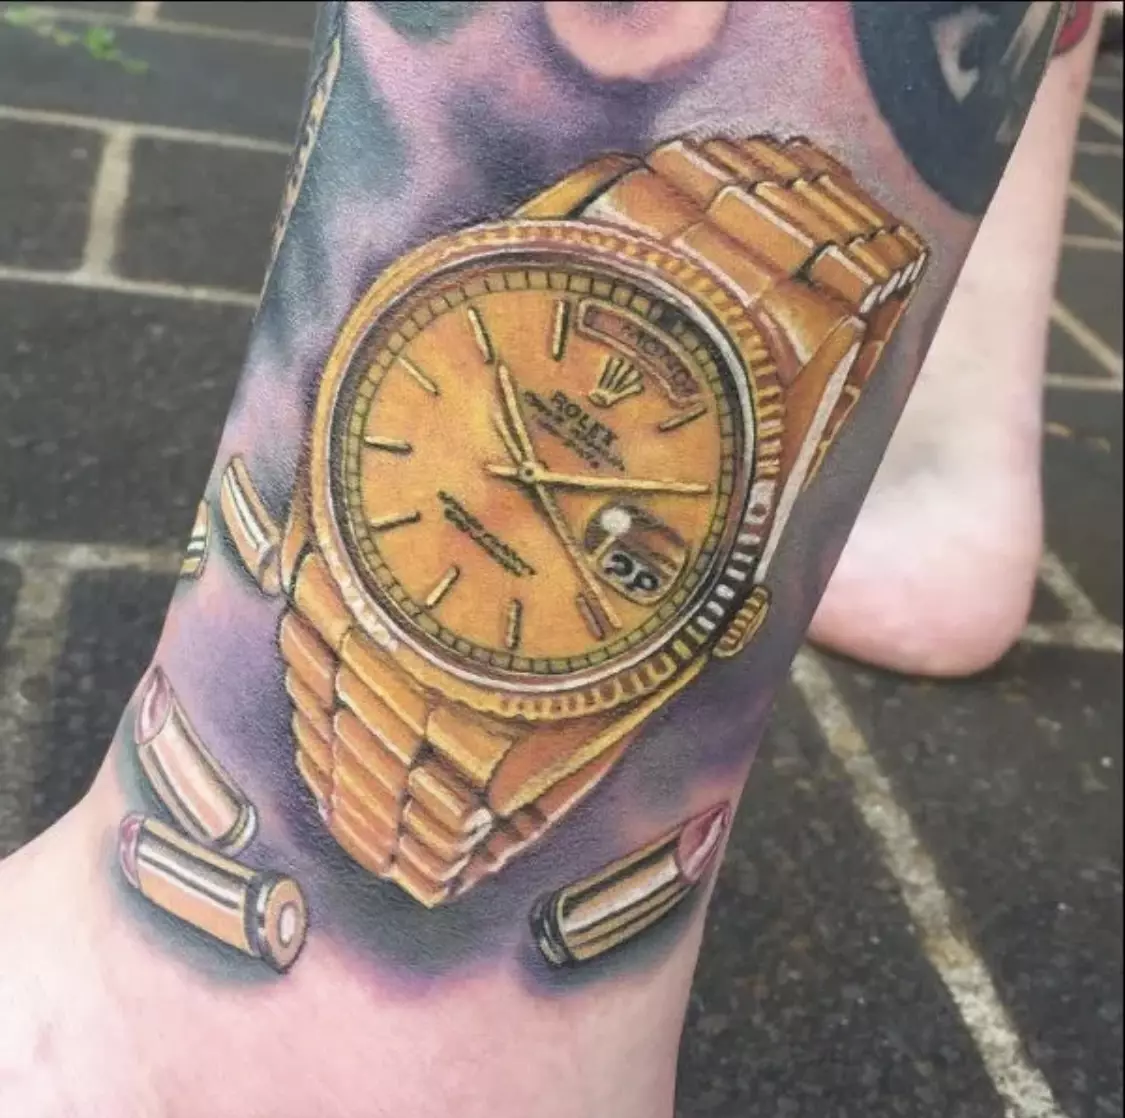 Uhren-Tattoos sind zu einem bizarren neuen Trend geworden. Was ist los?